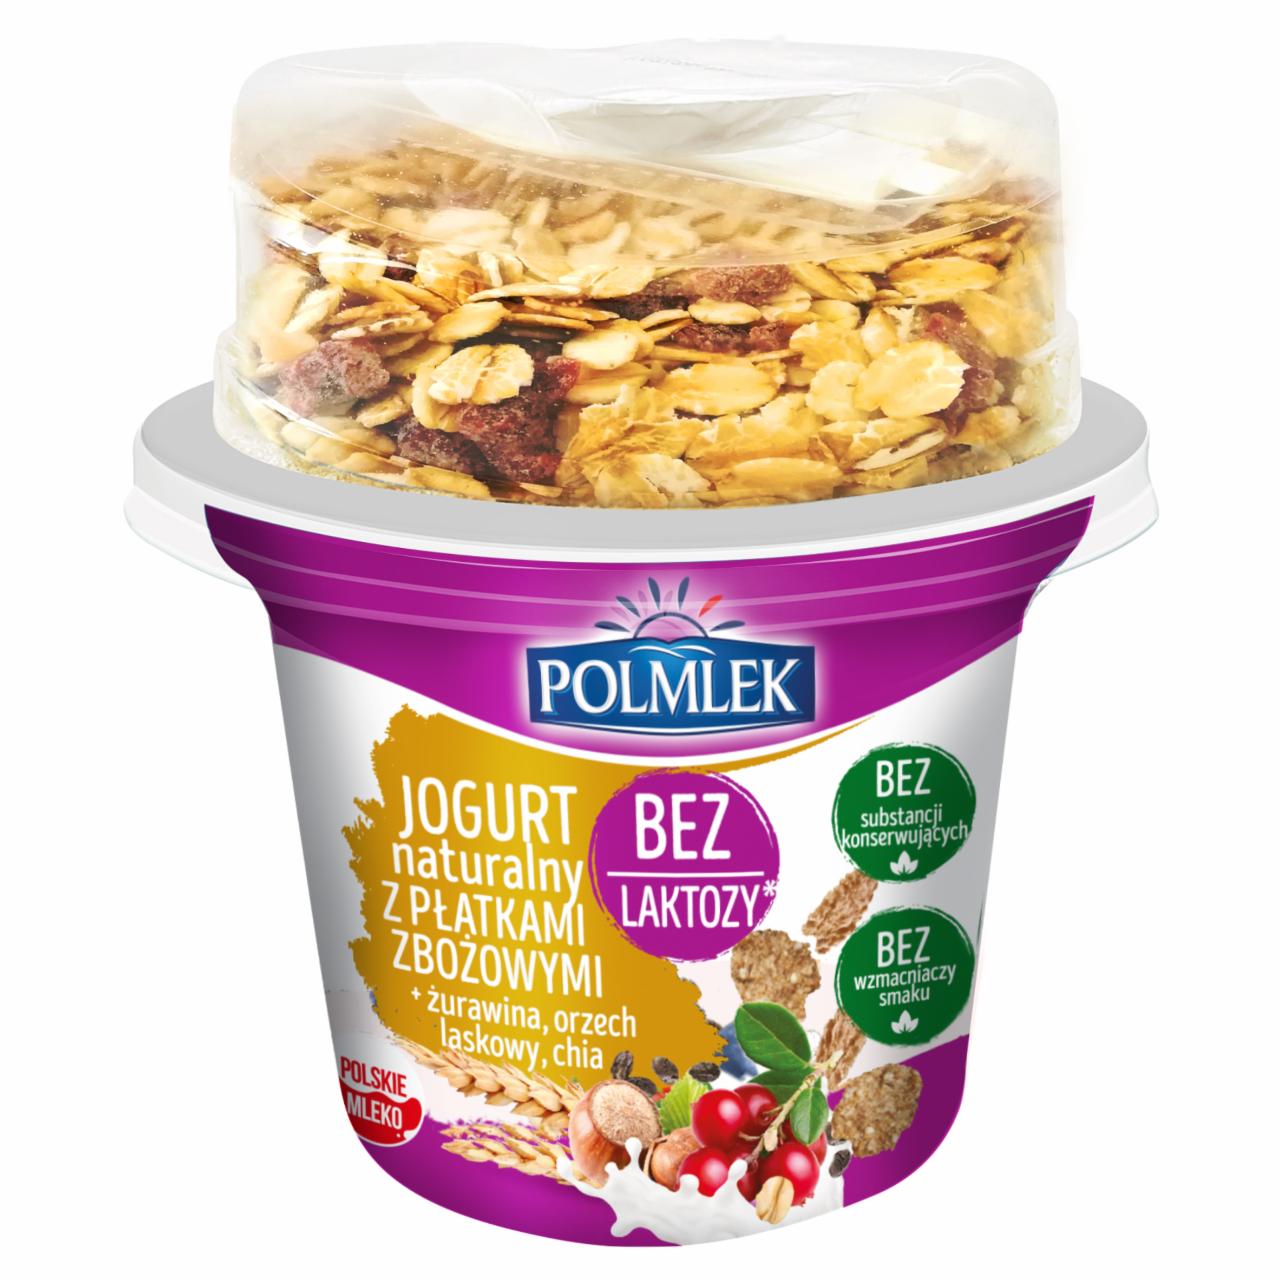 Zdjęcia - Polmlek Jogurt naturalny z płatkami zbożowymi + żurawina orzech laskowy chia 185 g